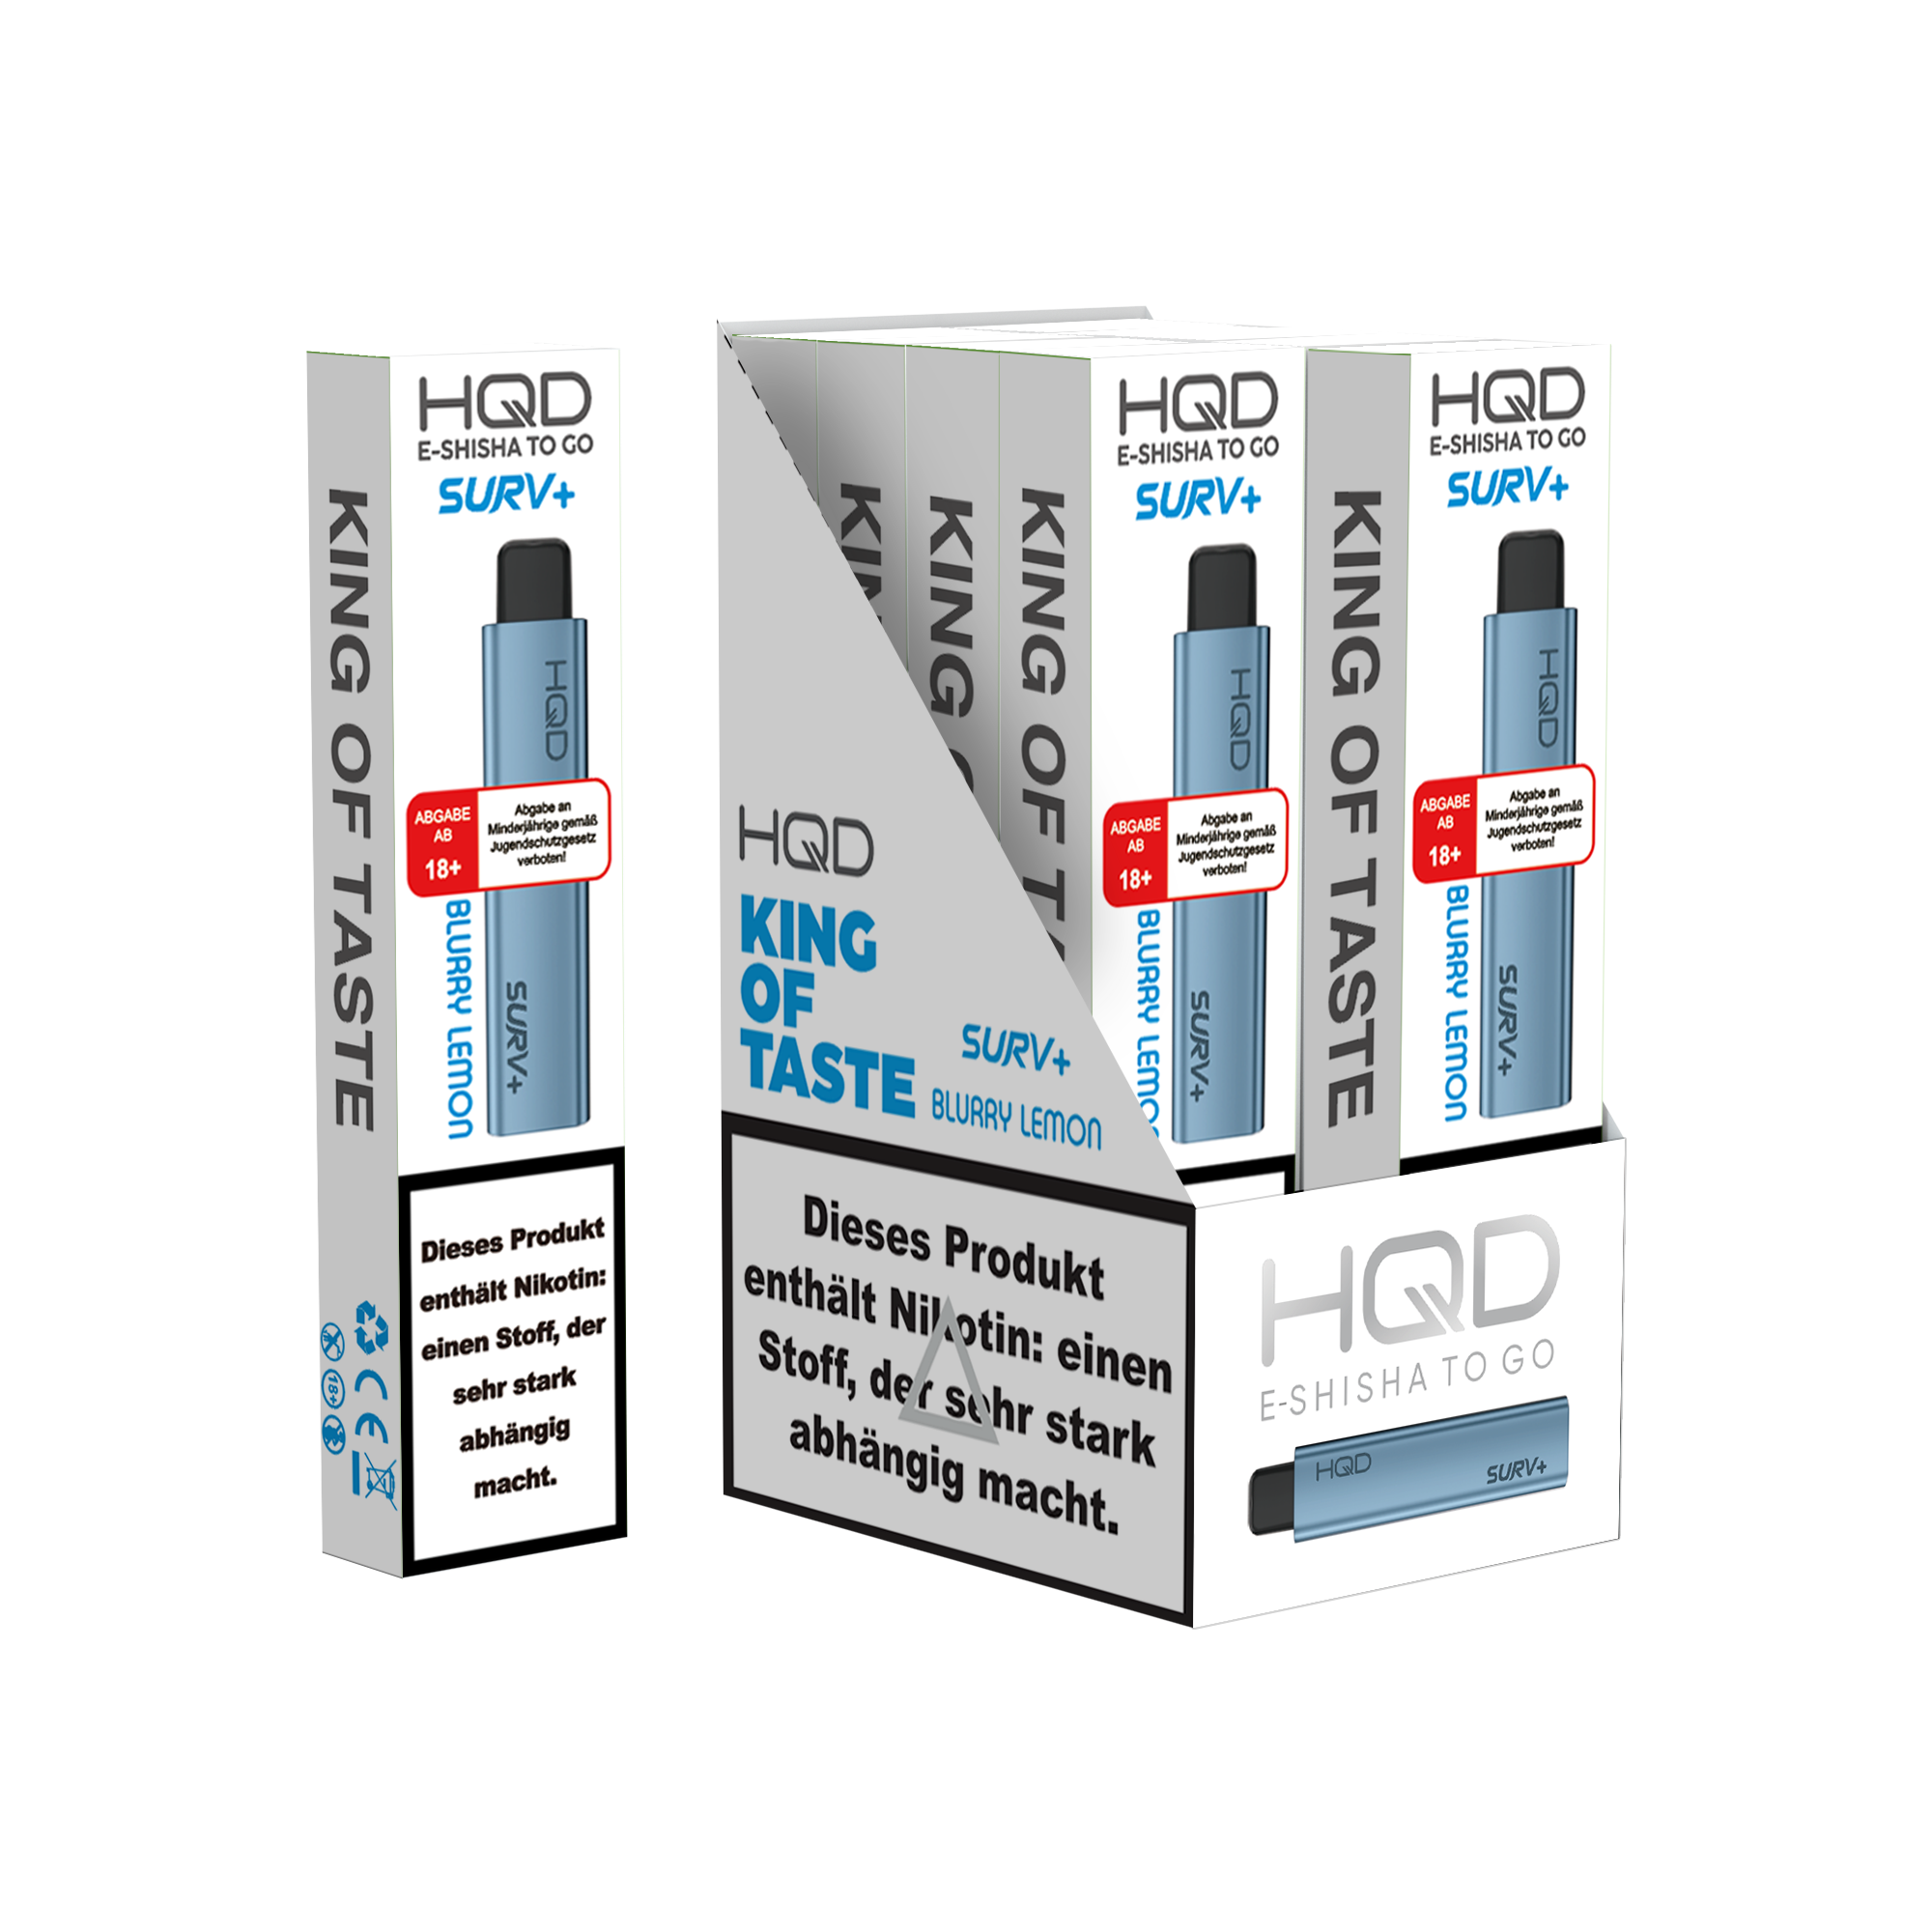 E-Zigarette HQD Surv+ BLURRY LEMON 18mg Nikotin 600